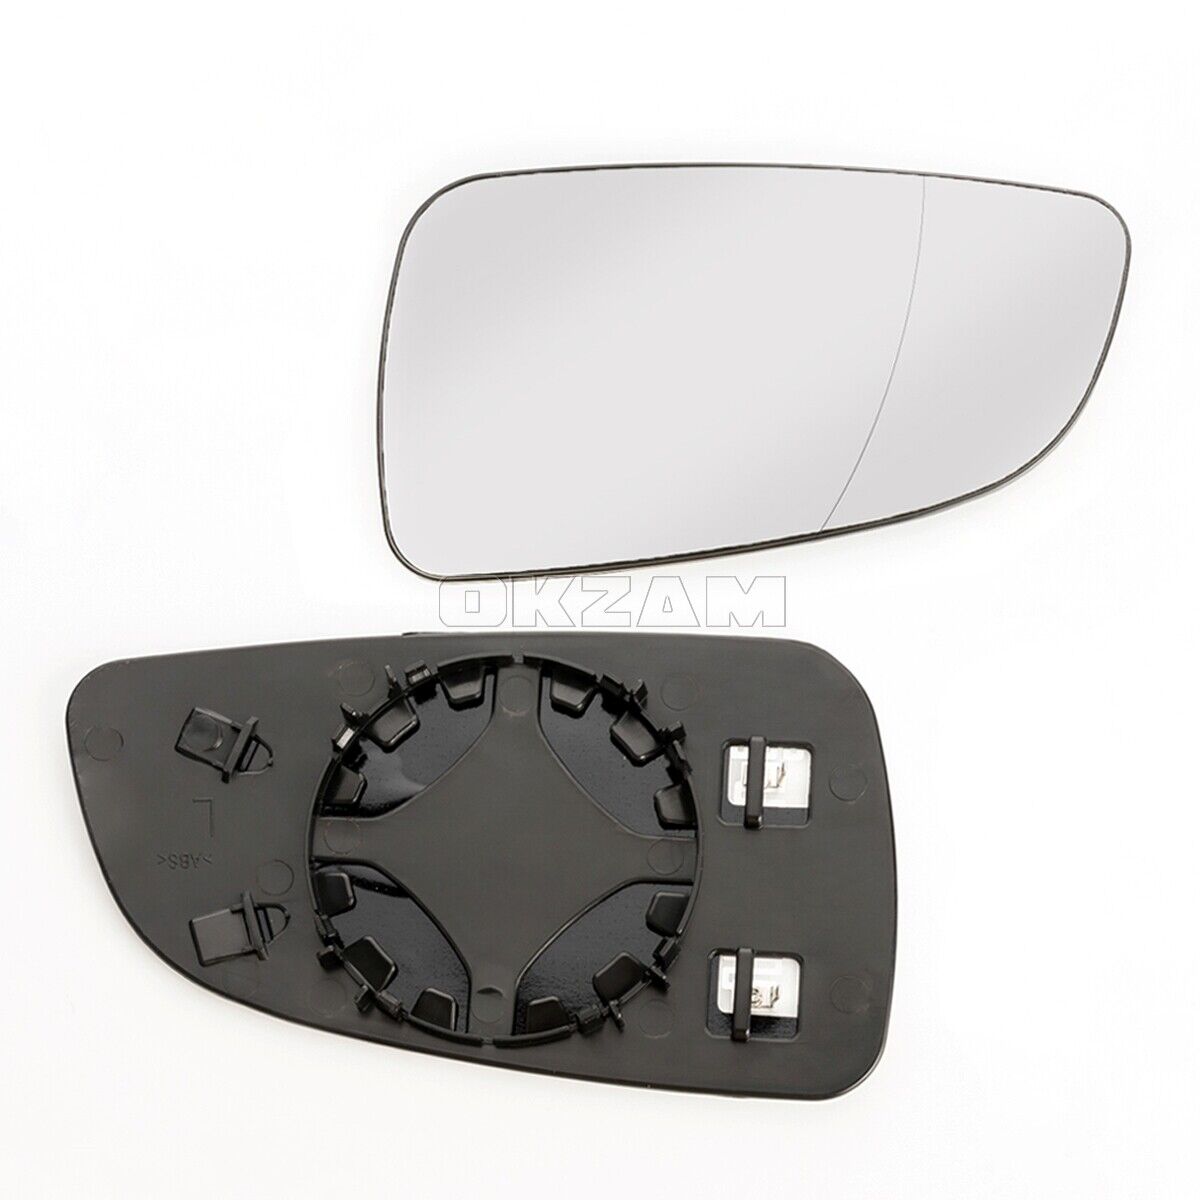 Aussenspiegel Spiegelglas asphärisch konvex elektrisch links für